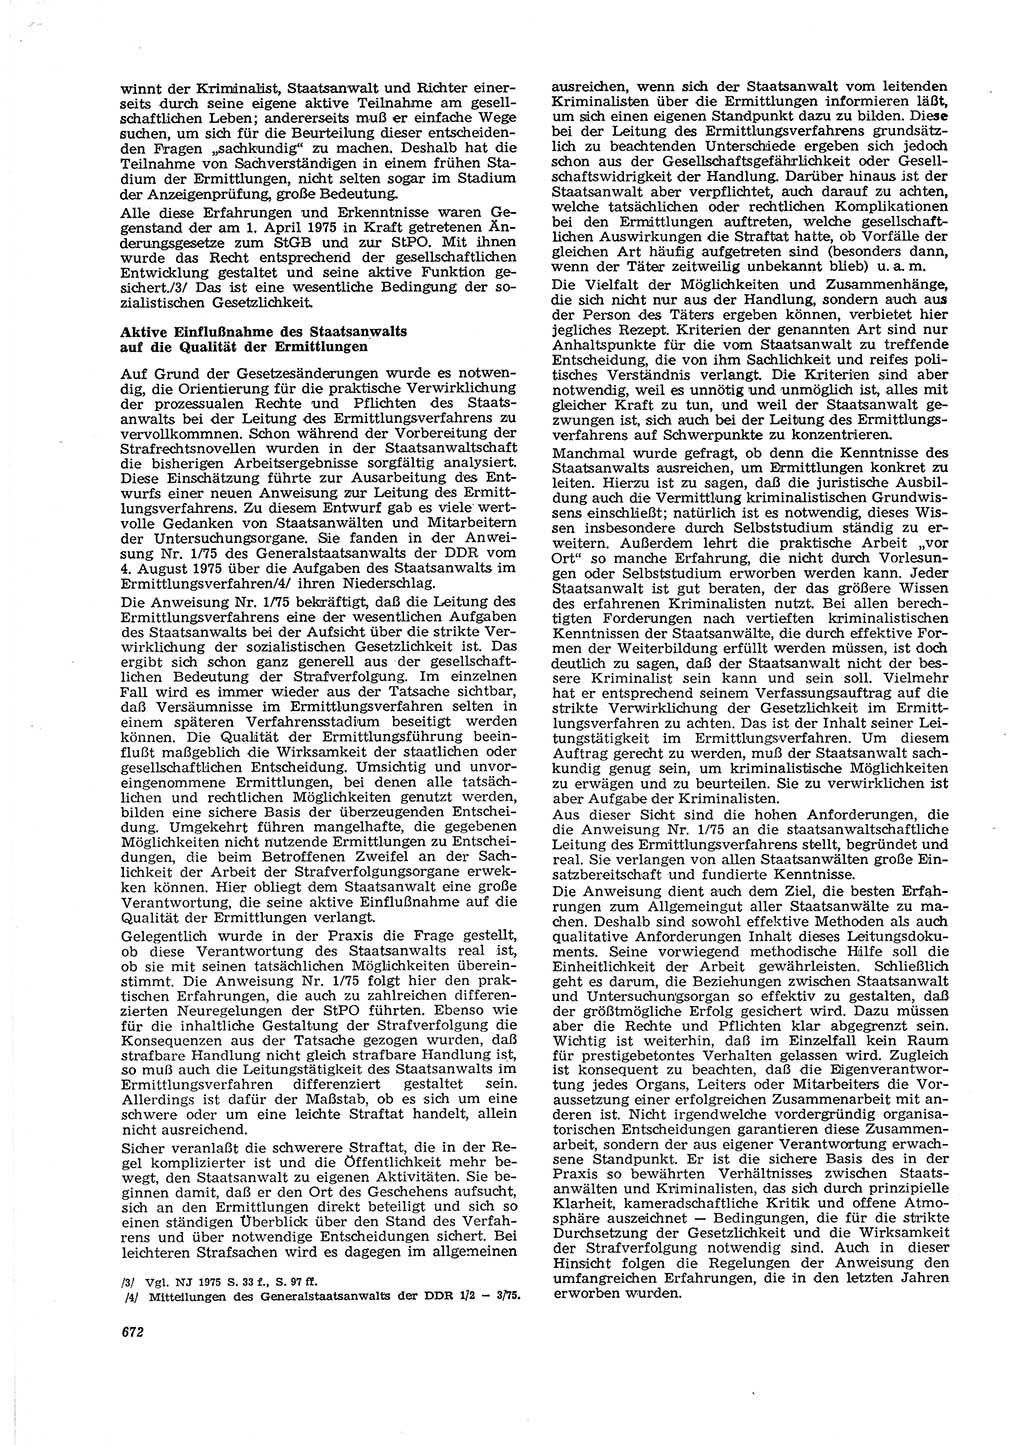 Neue Justiz (NJ), Zeitschrift für Recht und Rechtswissenschaft [Deutsche Demokratische Republik (DDR)], 29. Jahrgang 1975, Seite 672 (NJ DDR 1975, S. 672)